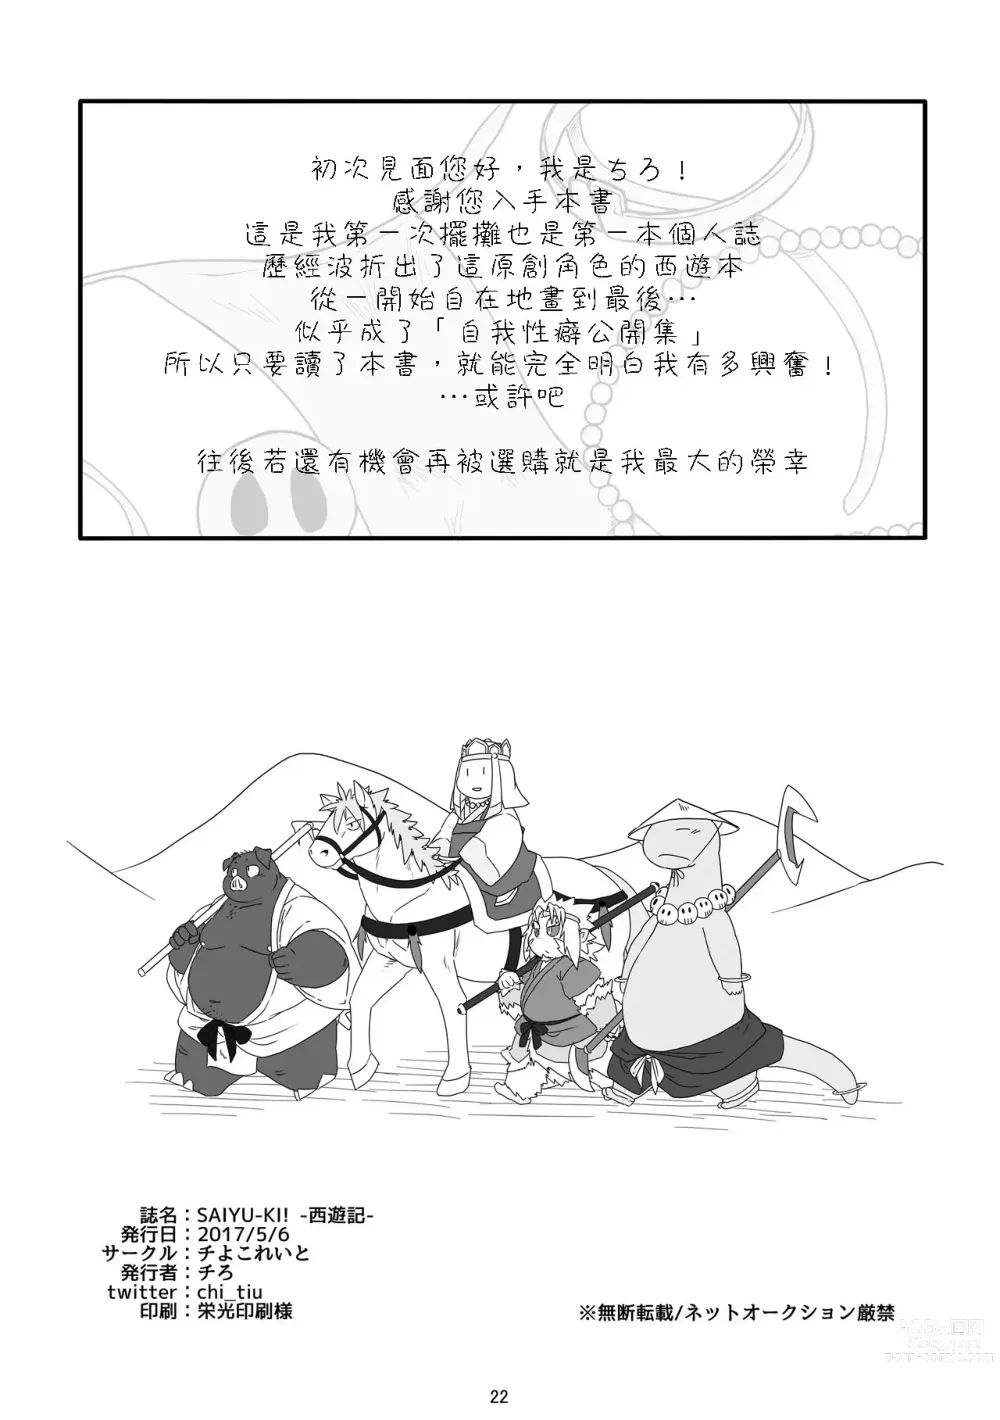 Page 21 of doujinshi SAIYU-KI!